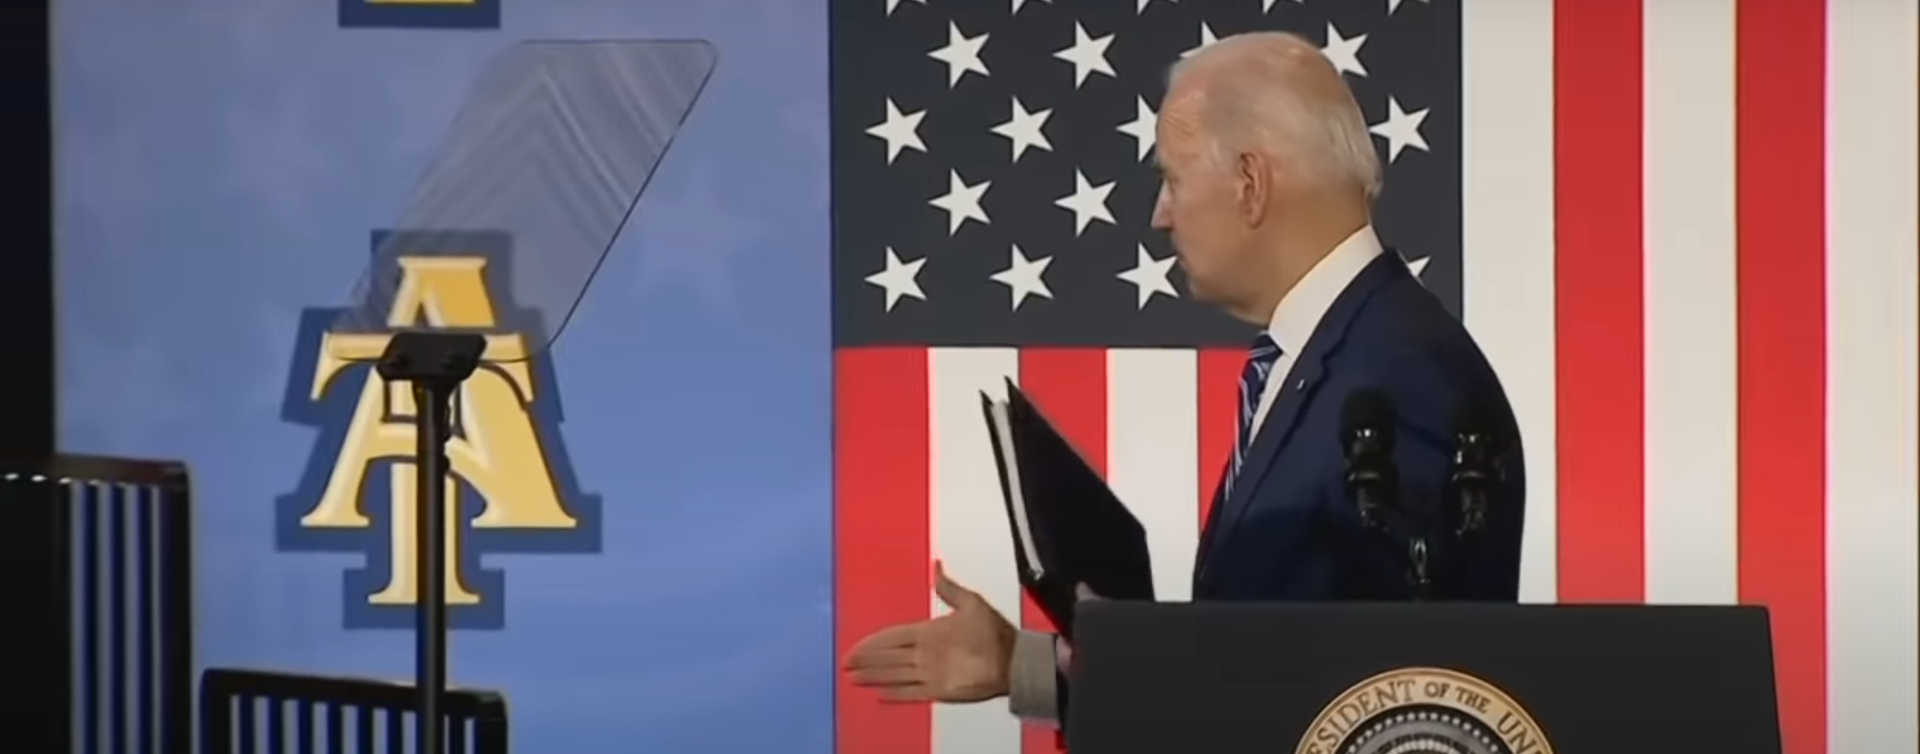 Biden Forgets Hand Shake